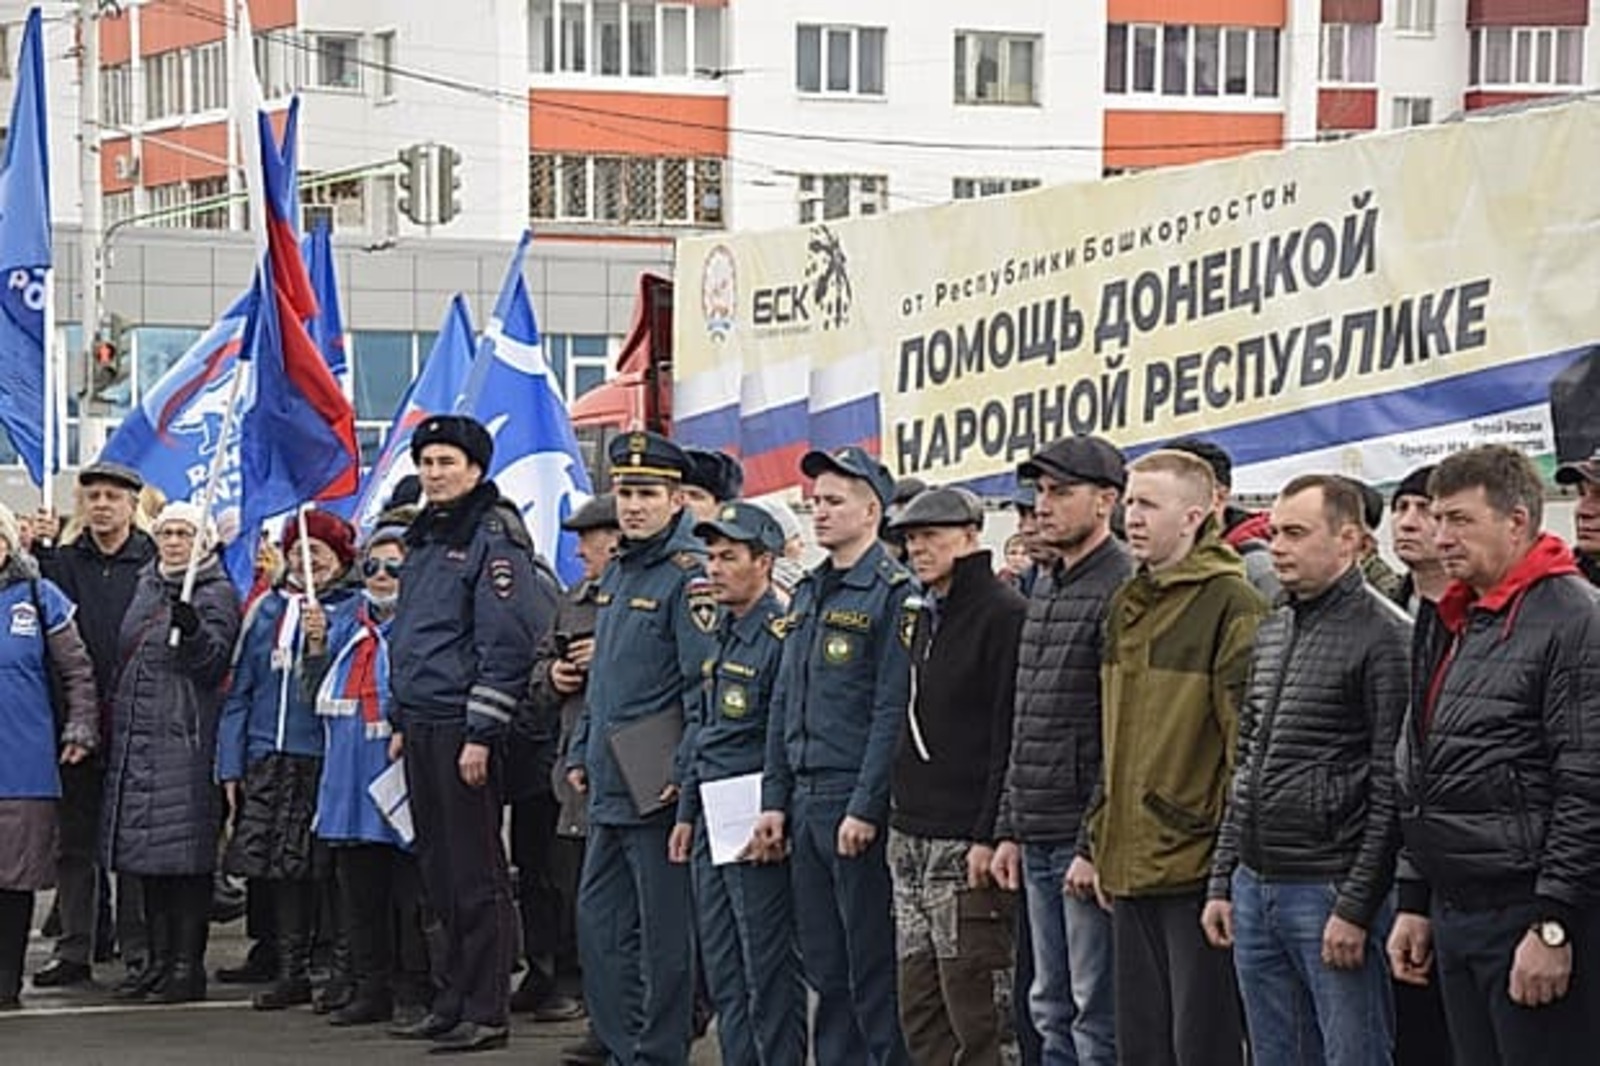 Из Башкирии выехала четвертая гуманитарная колонна в Донецкую и Луганскую республики